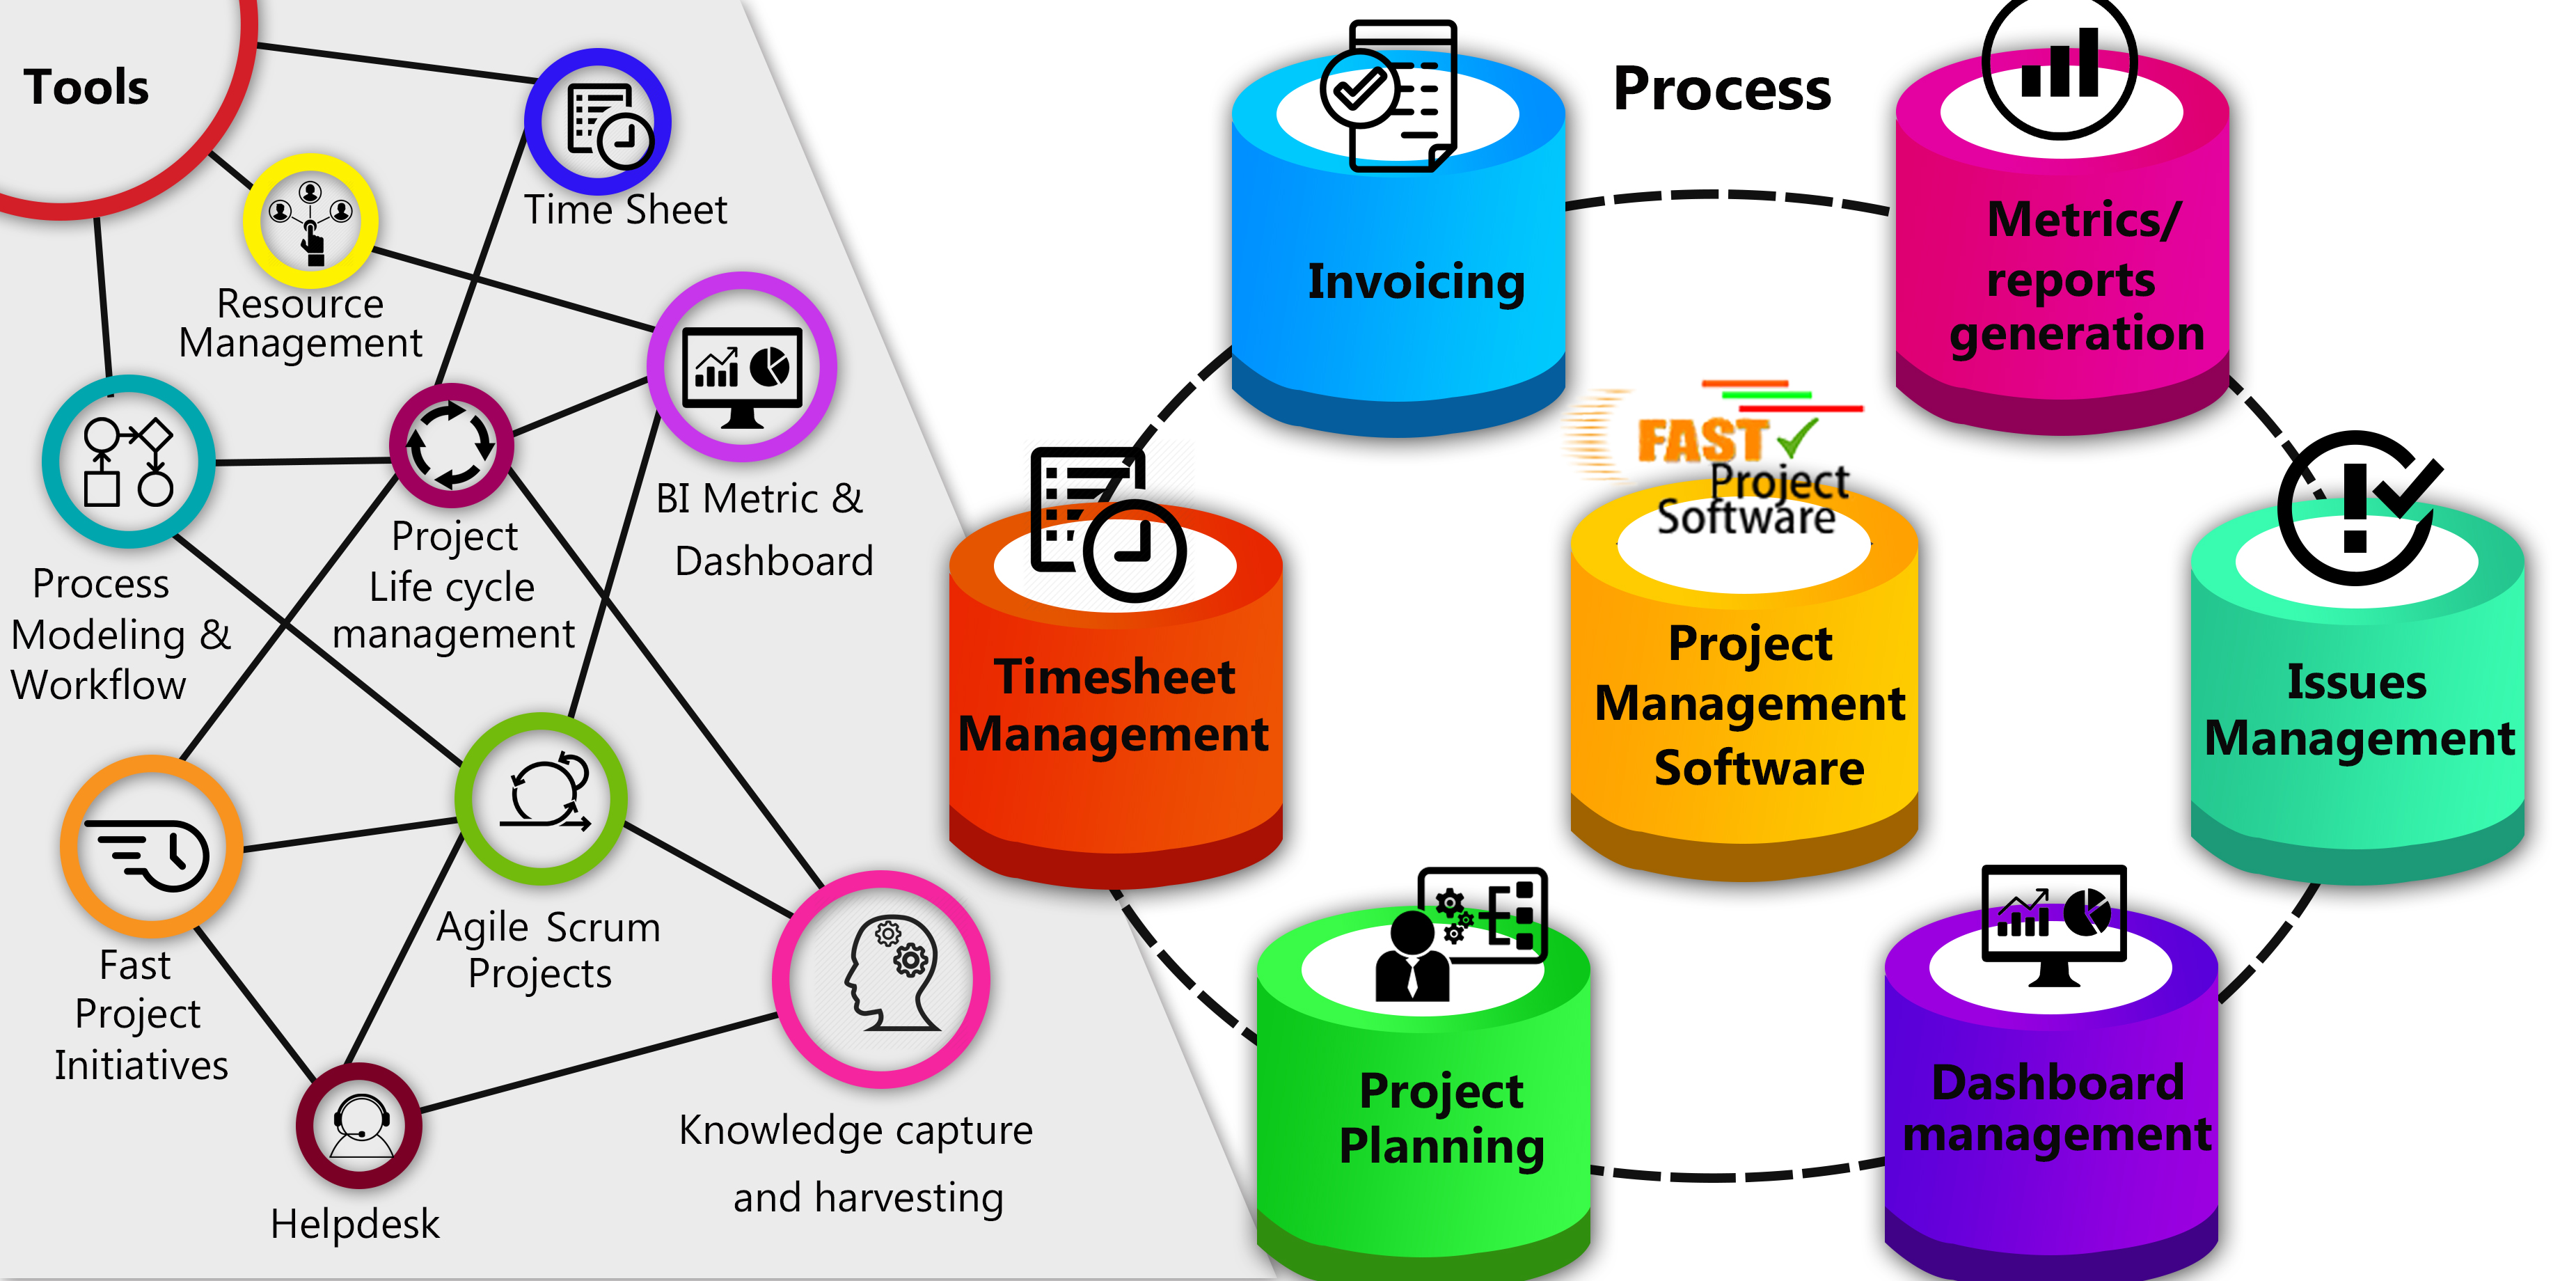 Basic Project Management Process